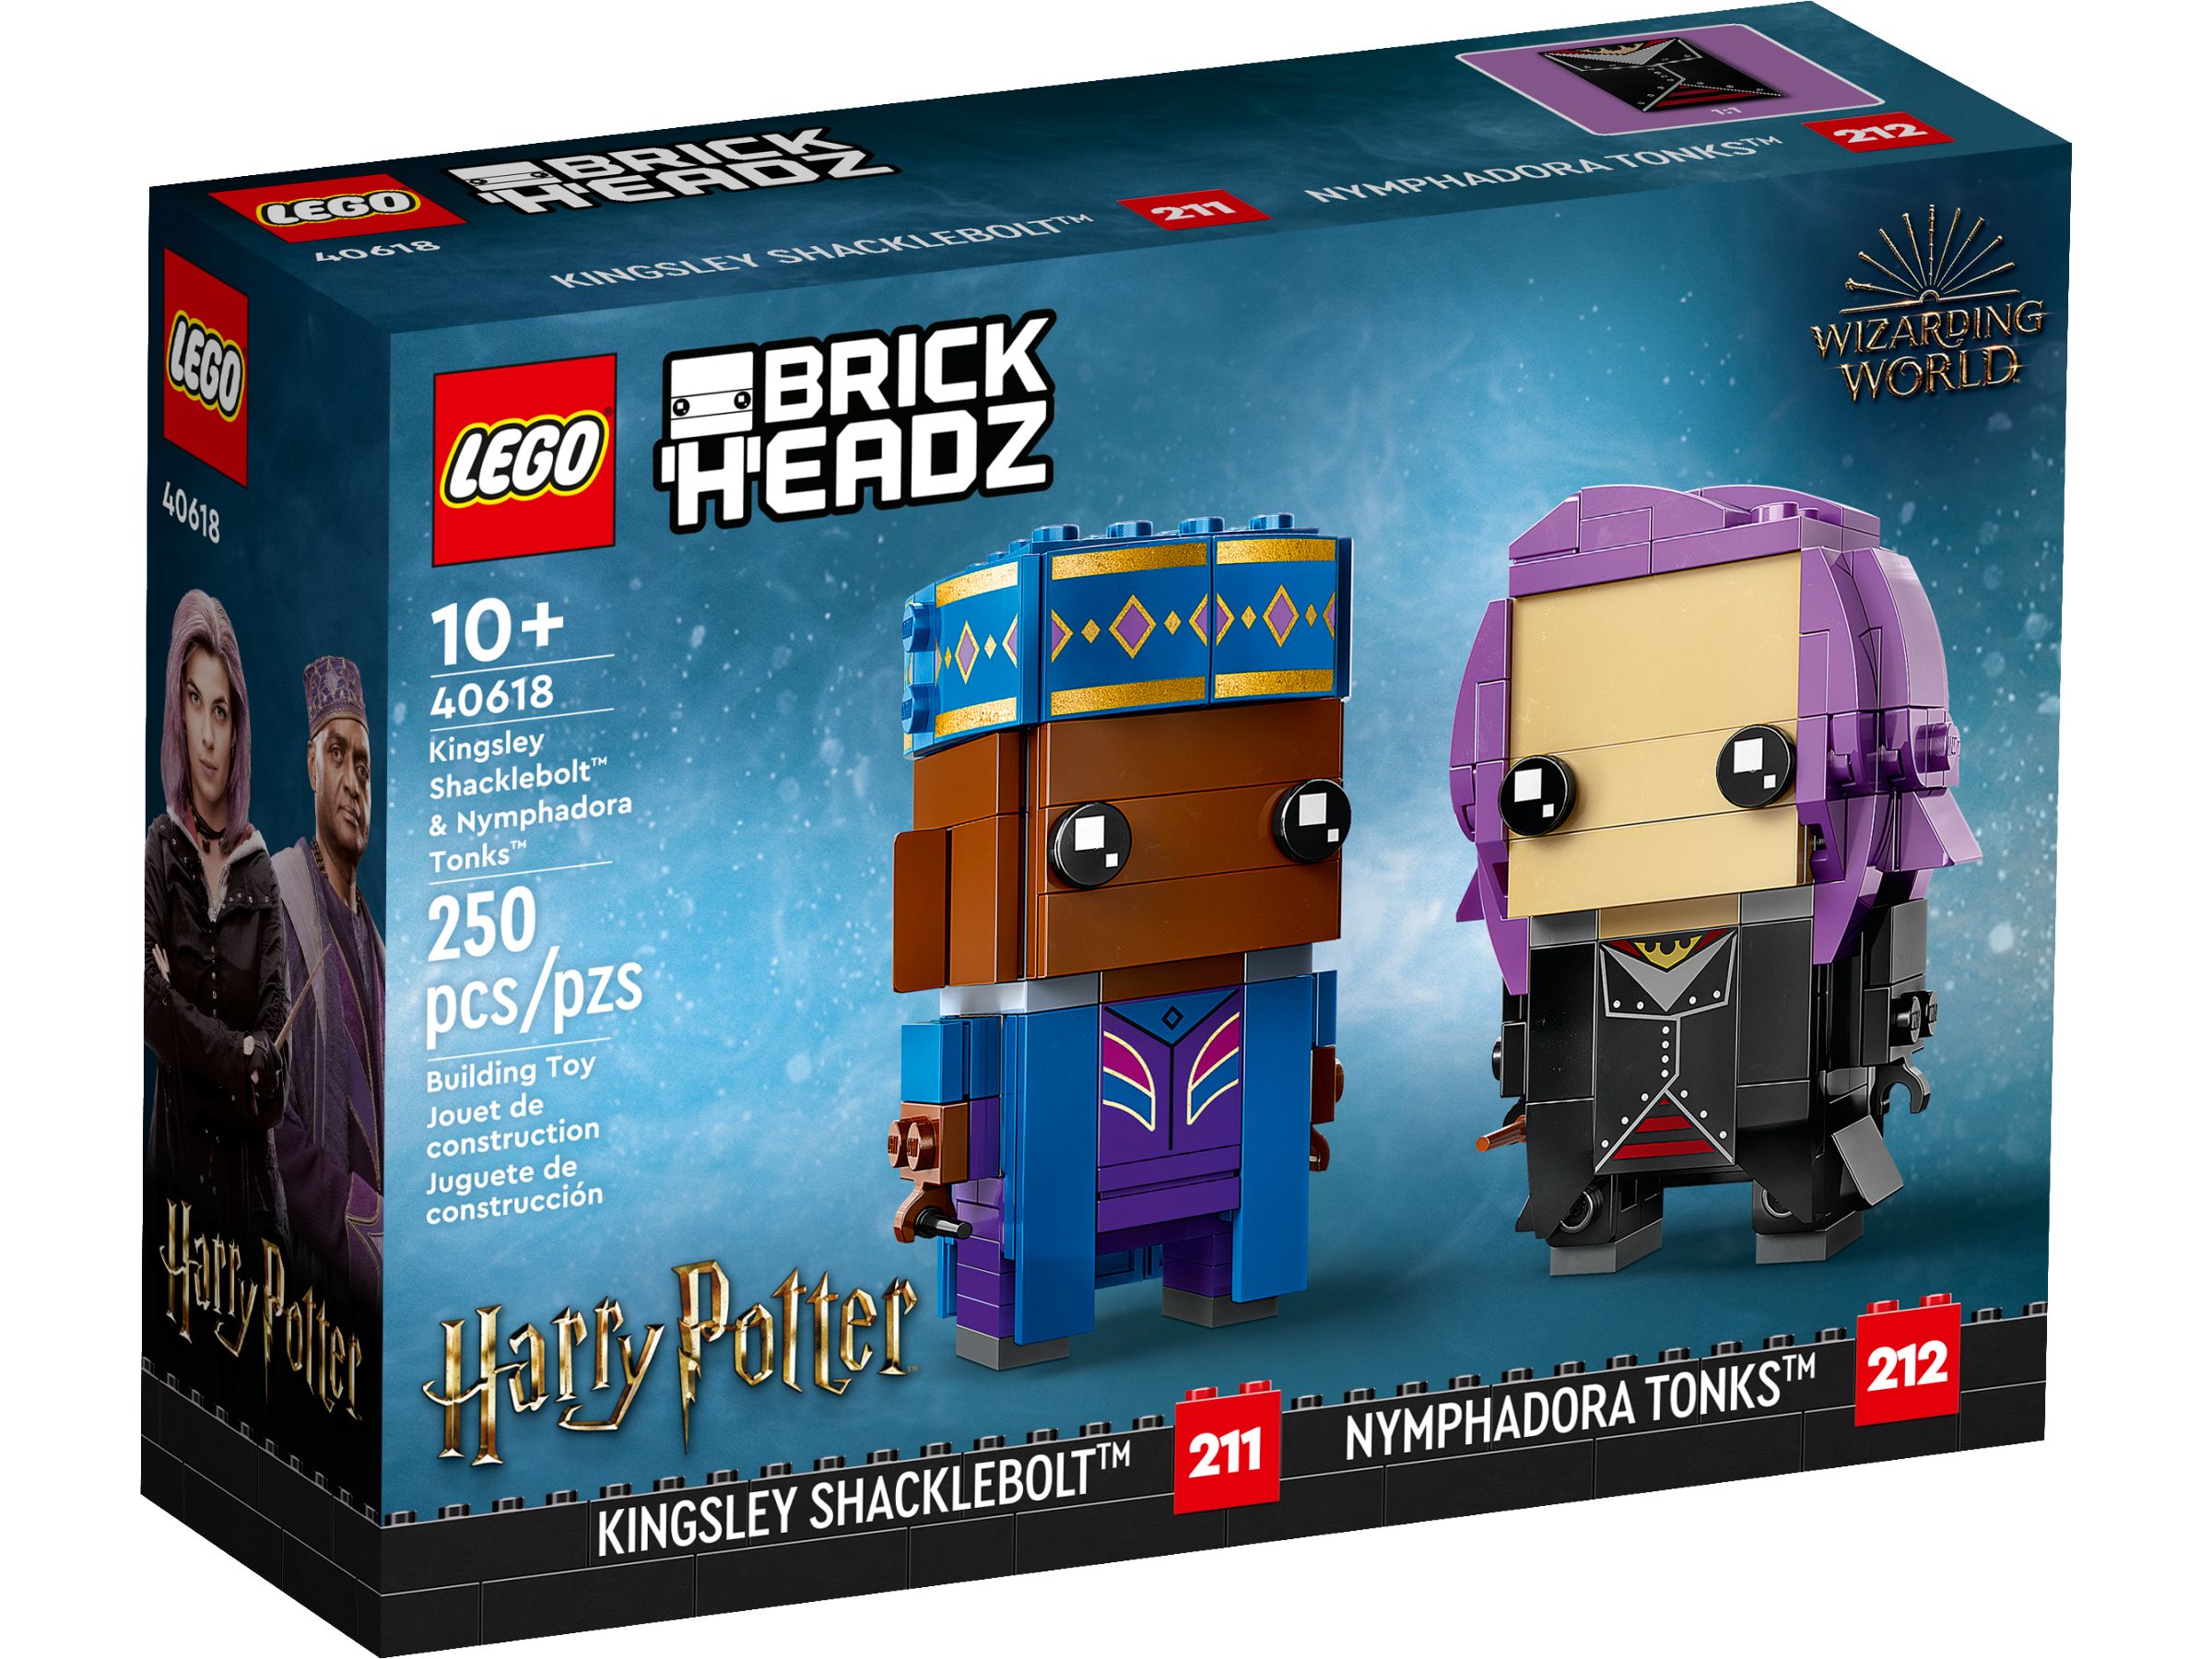 LEGO BrickHeadz 40618 Kingsley Shacklebolt™ & Nymphadora Tonks™ LEGO_40618_Box1_v39.jpg